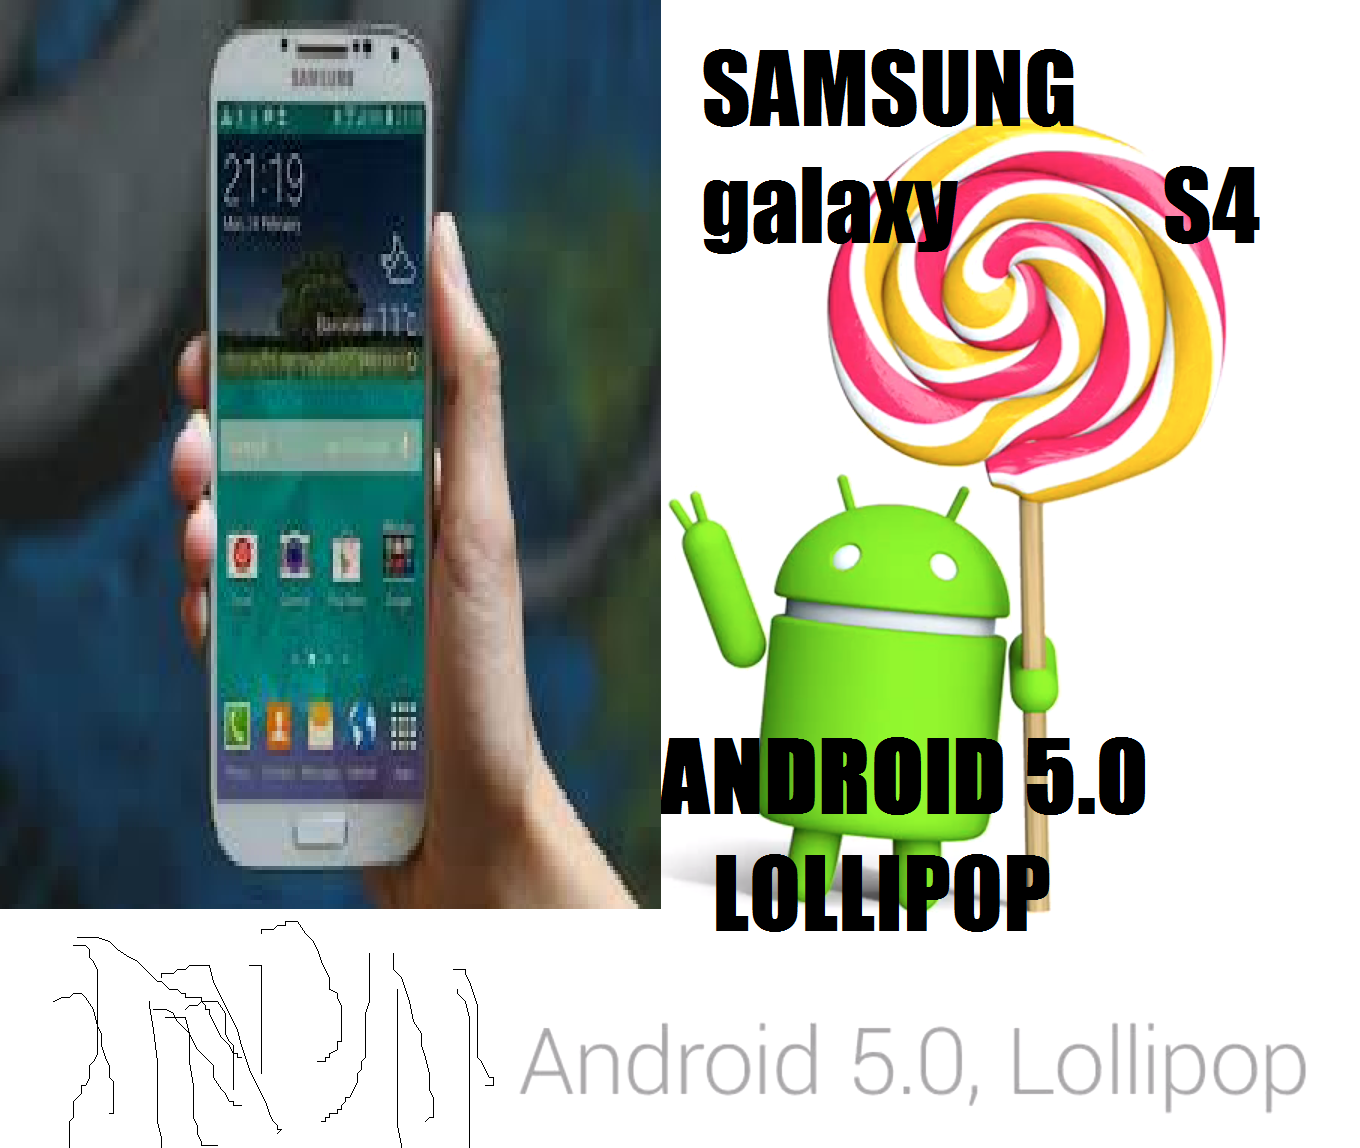 Aparece Android 5.0 Lollipop en un Galaxy S4 [Video]